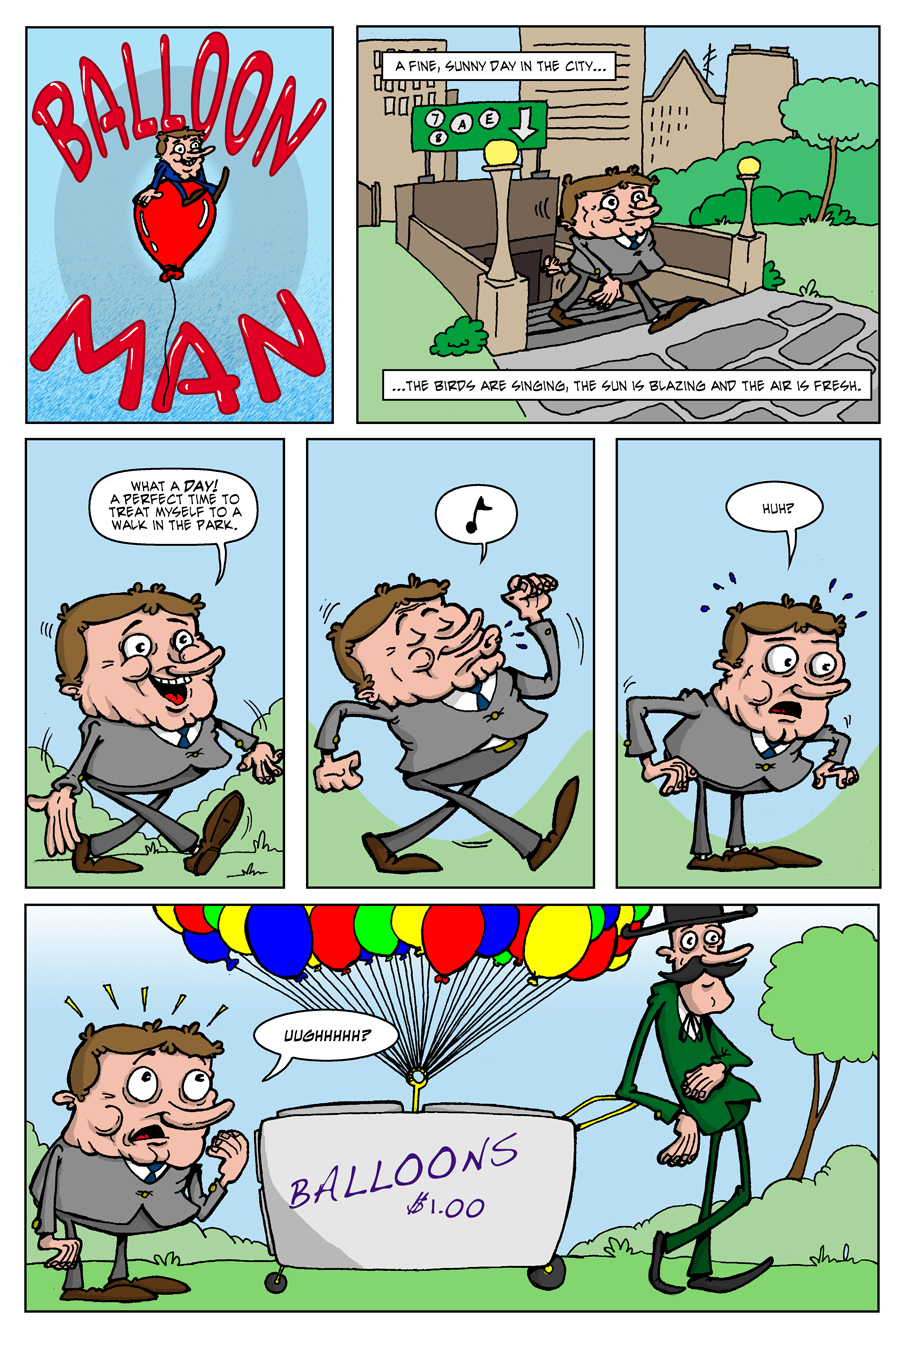 Balloon Man — Nate Bramble - Cartoonist & Illustrator